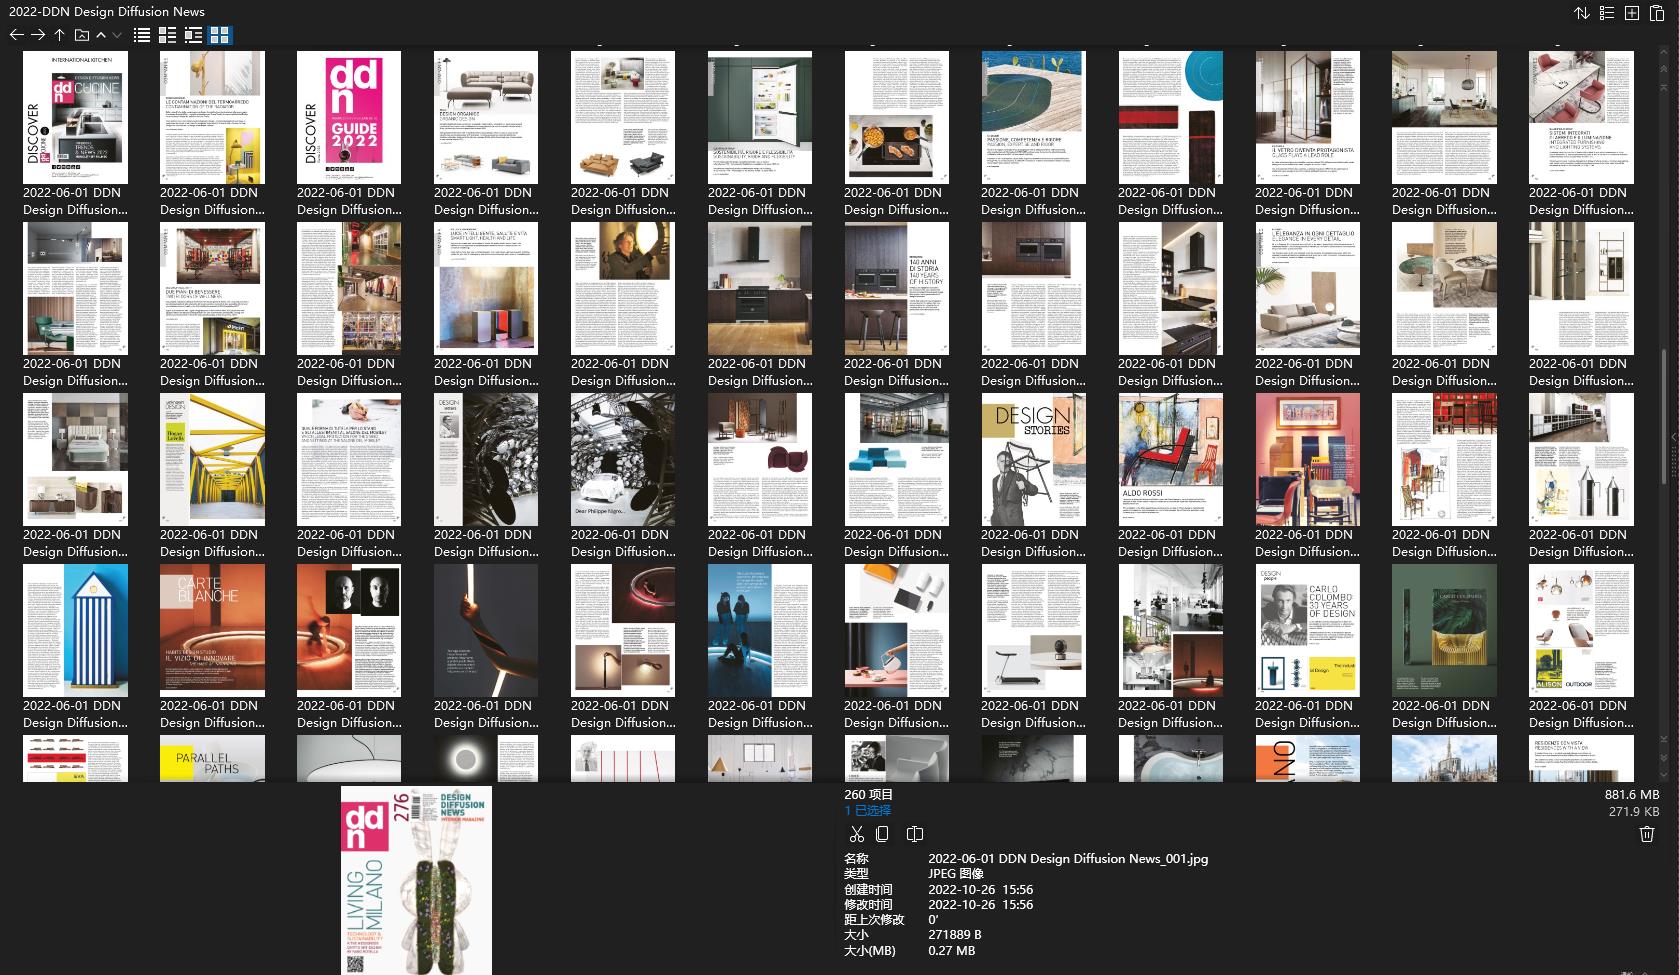 室内、软装杂志DDN,室内设计杂志,软装设计杂志,DDN设计杂志,室内设计电子杂志,杂志下载,Design Diffusion News